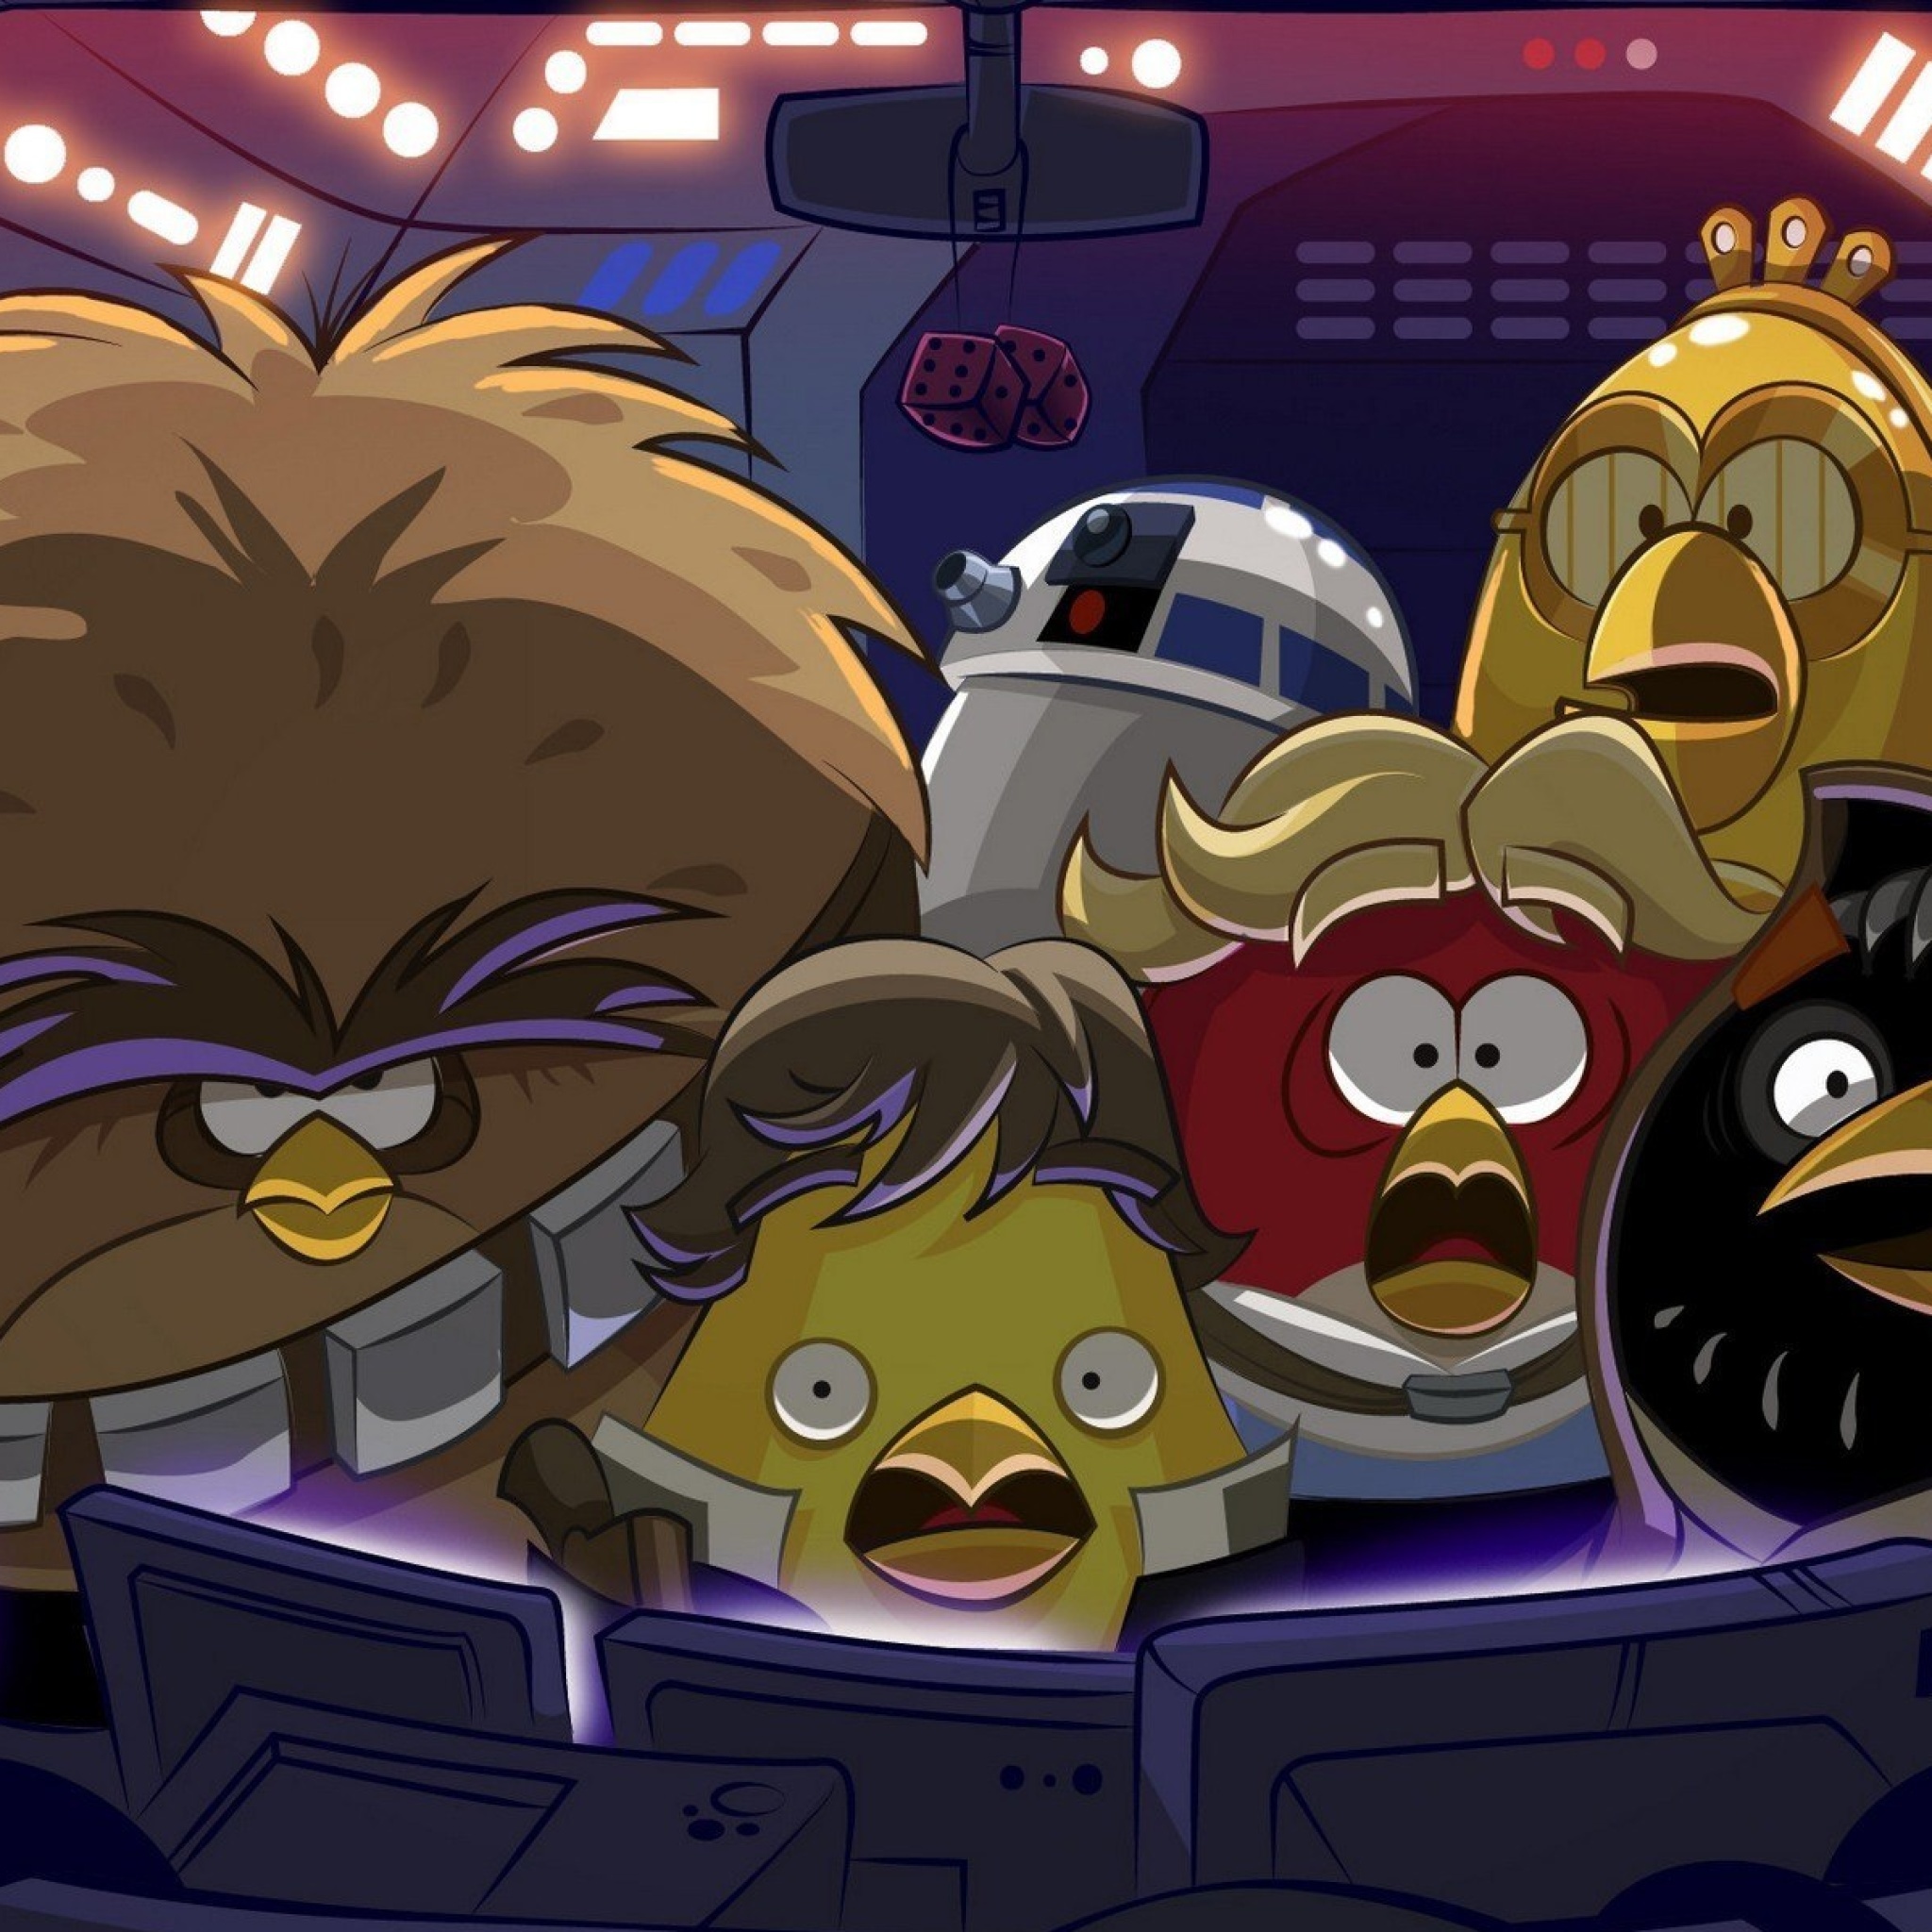 Энгри бердз star wars. Энгри бердз Звездные войны 2. Энгри бердз Звездные войны. Птички Энгри бердз Звездные войны. Angry Birds Звёздные войны Star Wars.